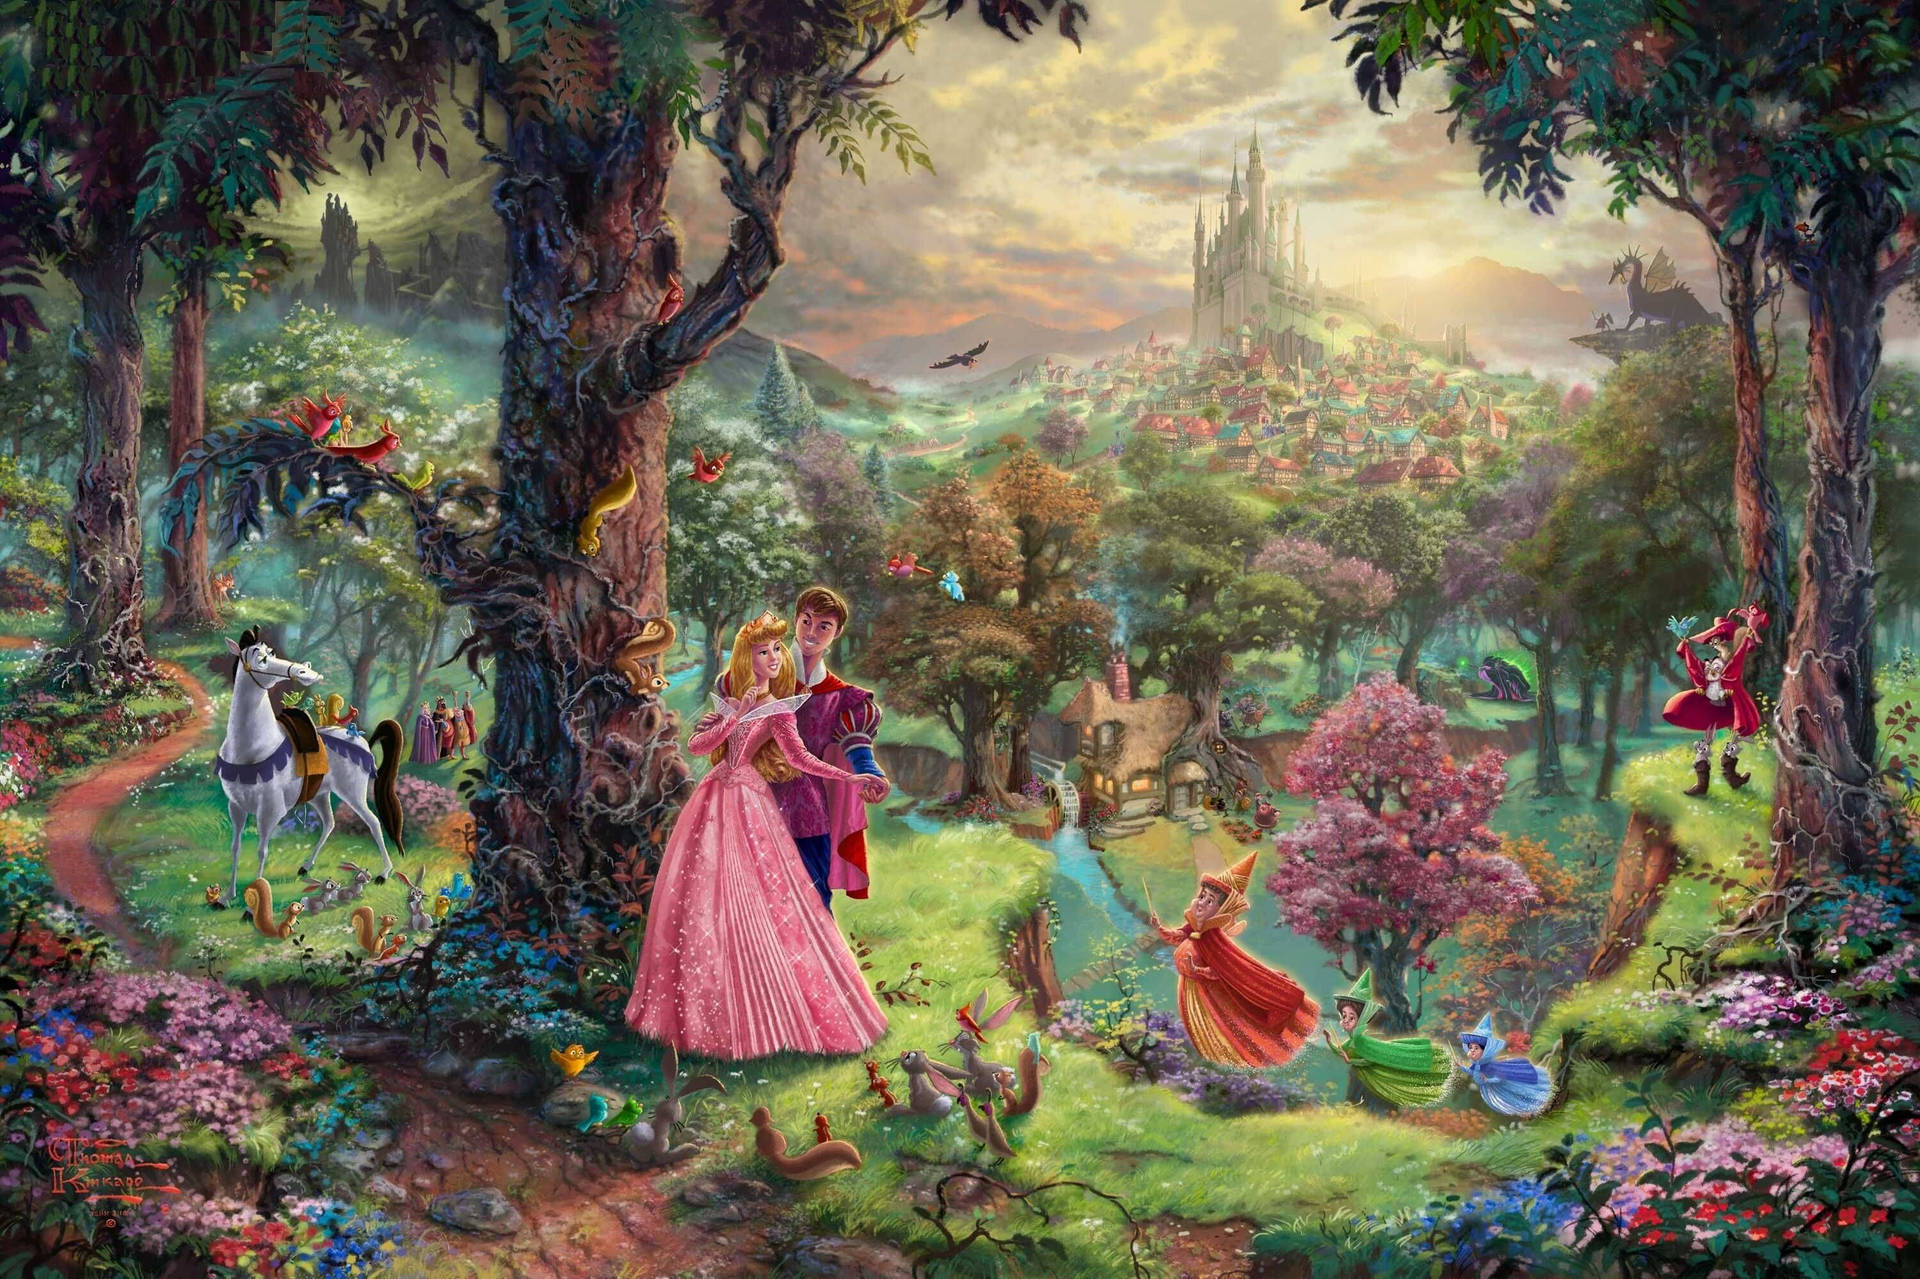 Disney Sleeping Beauty in pink dress on a forest wallpaper.